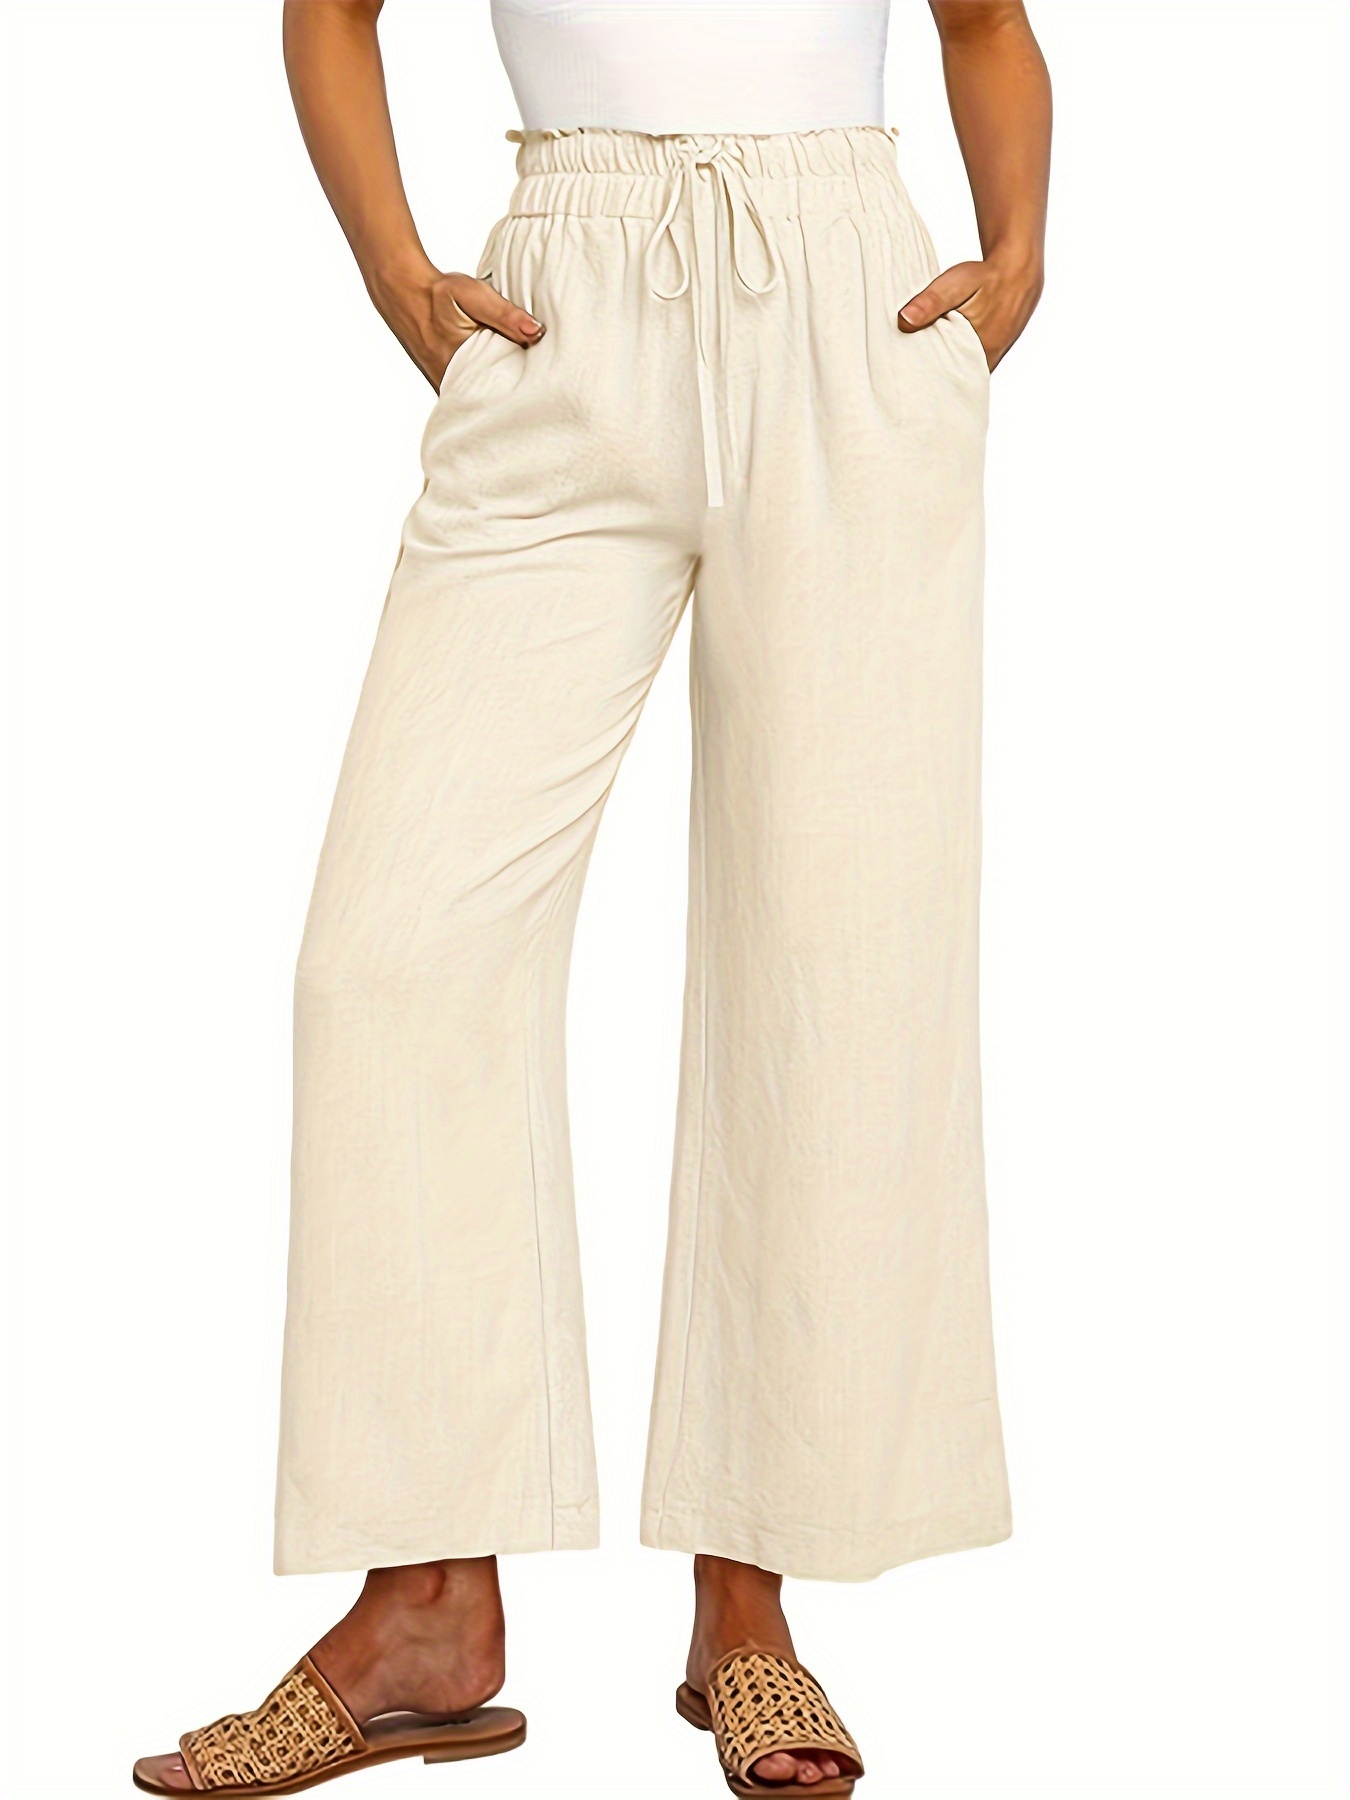 KAQQ Pantalón Terciopelo Mujer Pantalones Casuales de Moda con Bolsillos de  algodón y Lino Estampados para Mujer Ropa Mujer